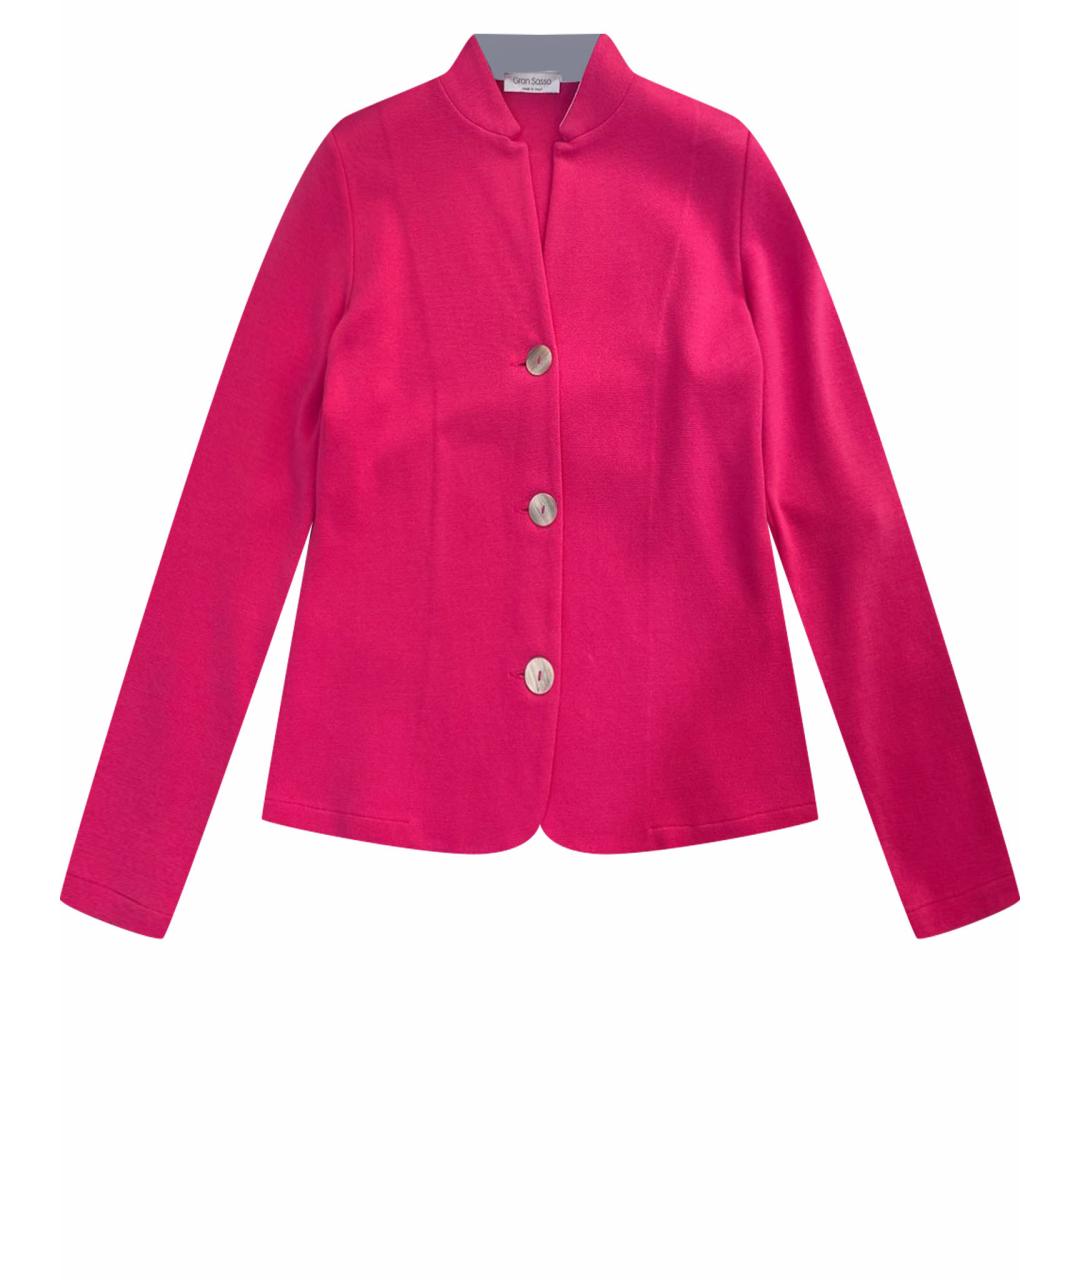 GRAN SASSO Розовый хлопковый жакет/пиджак, фото 1